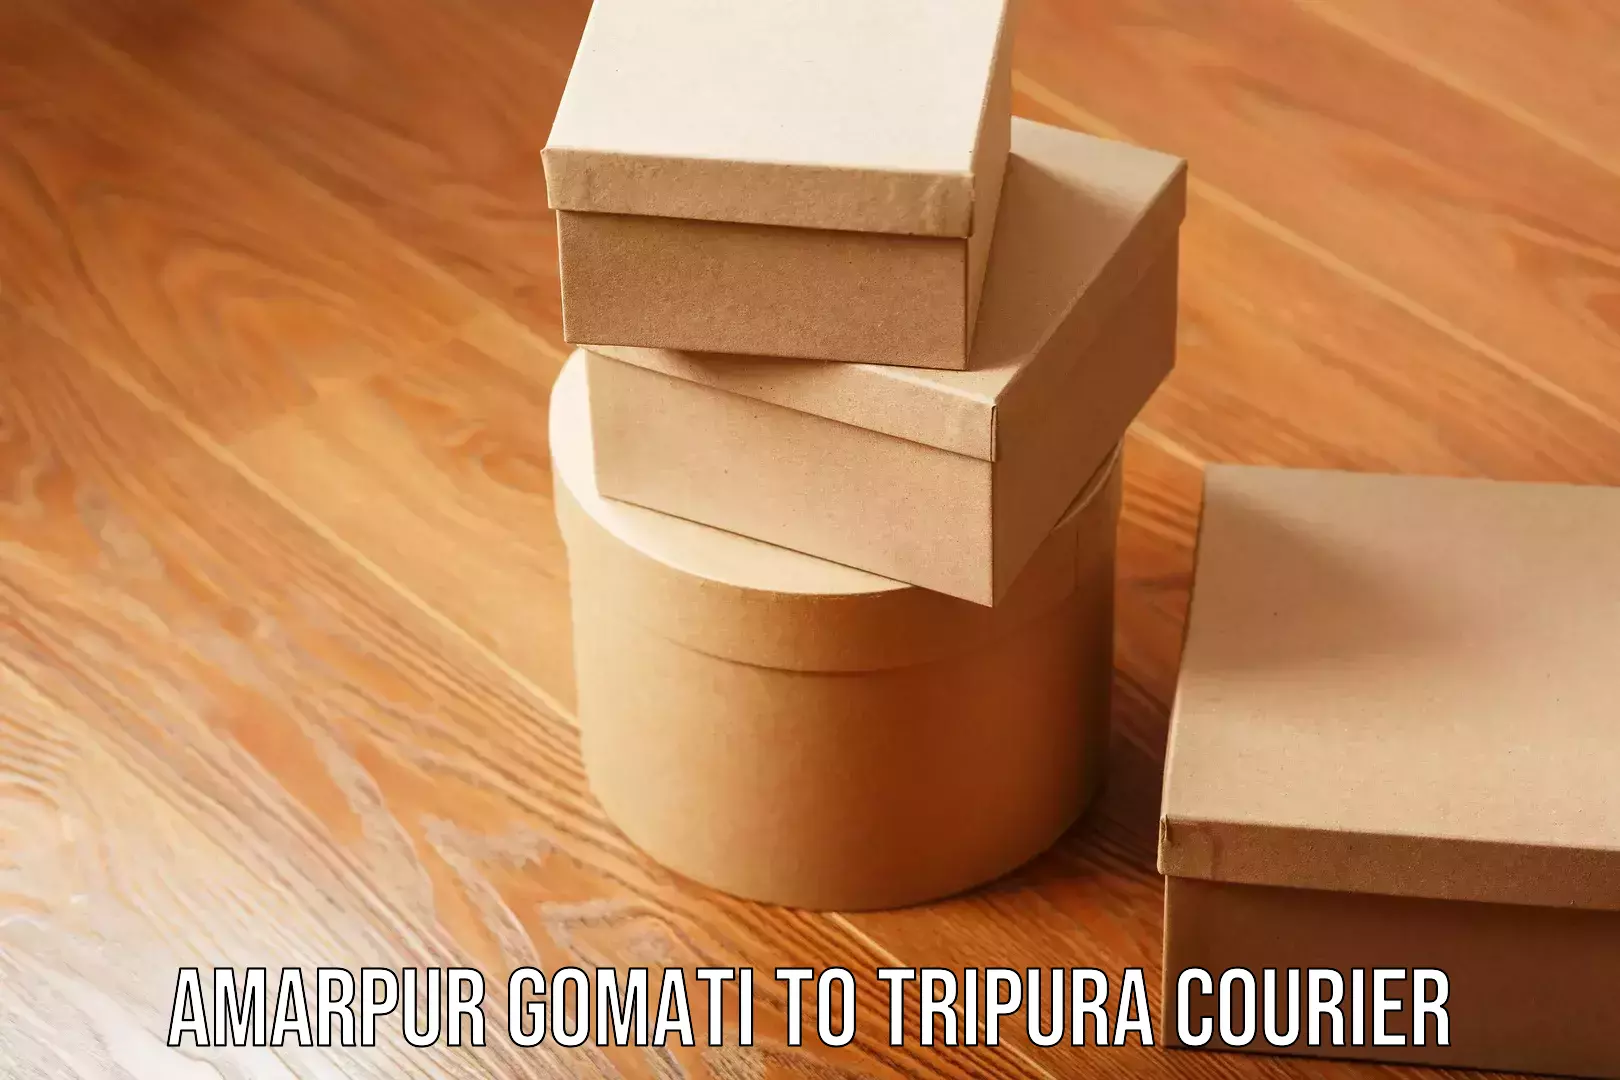 Cargo delivery service Amarpur Gomati to Tripura